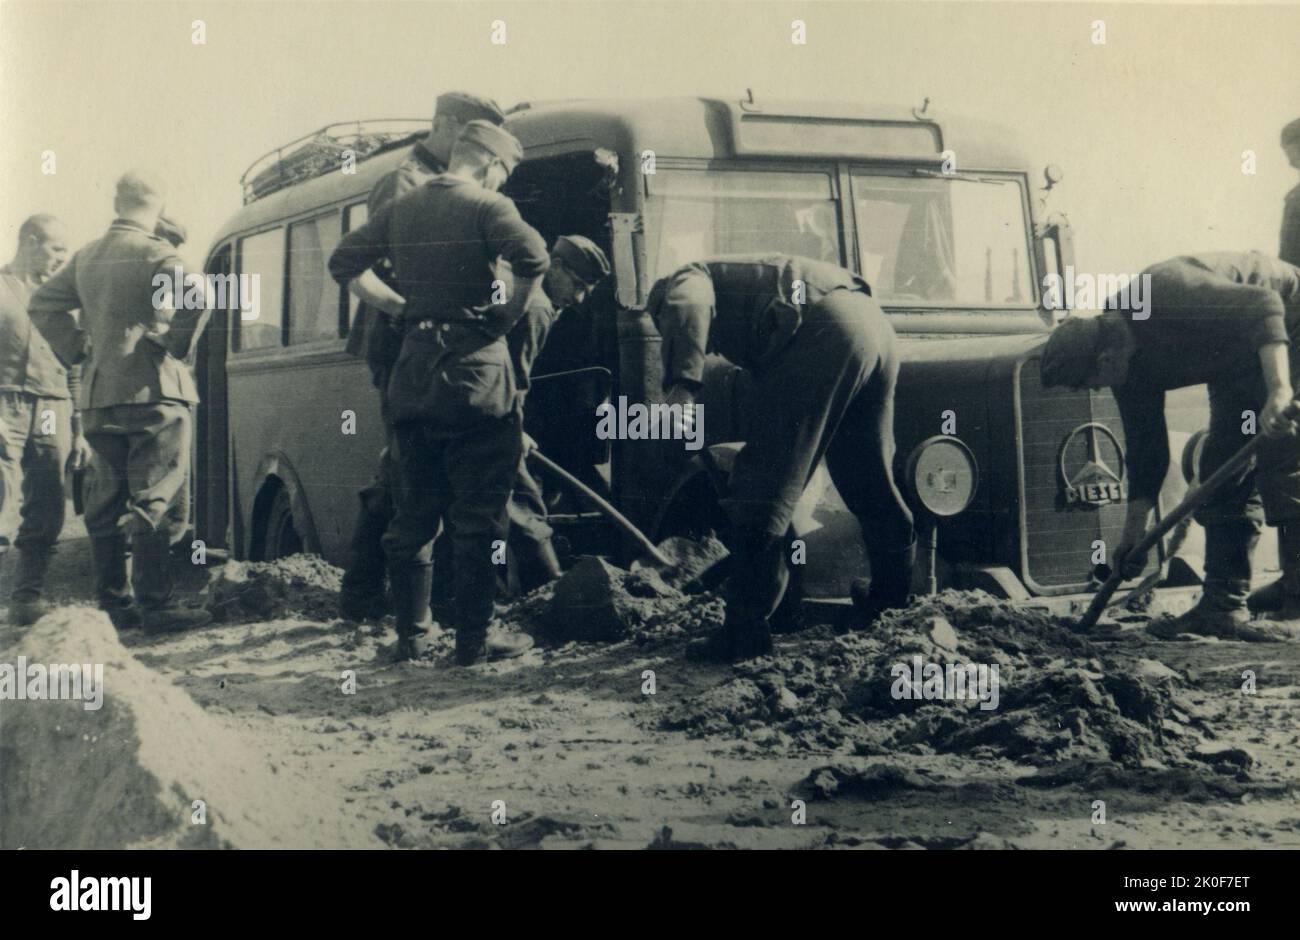 Deuxième Guerre mondiale / Seconde Guerre mondiale, Russie 1942 / 1943, soldats allemands réparant un camion. Opération Barbarossa Banque D'Images